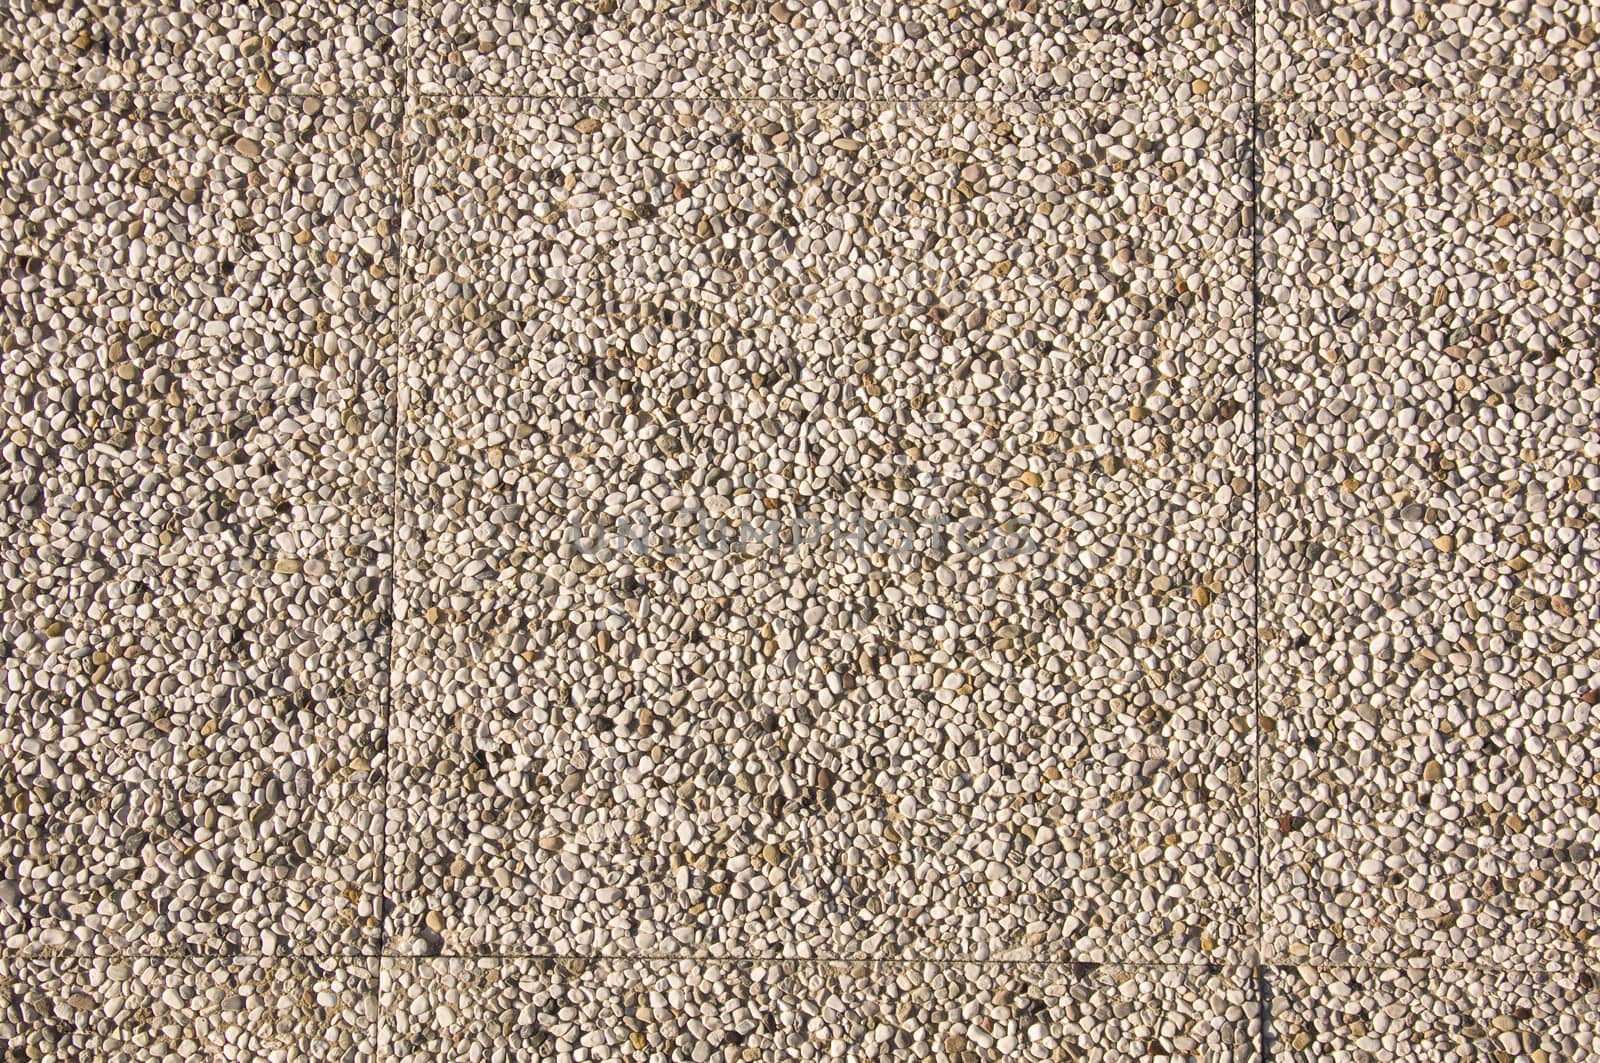 White pebble stones texture  by jelen80